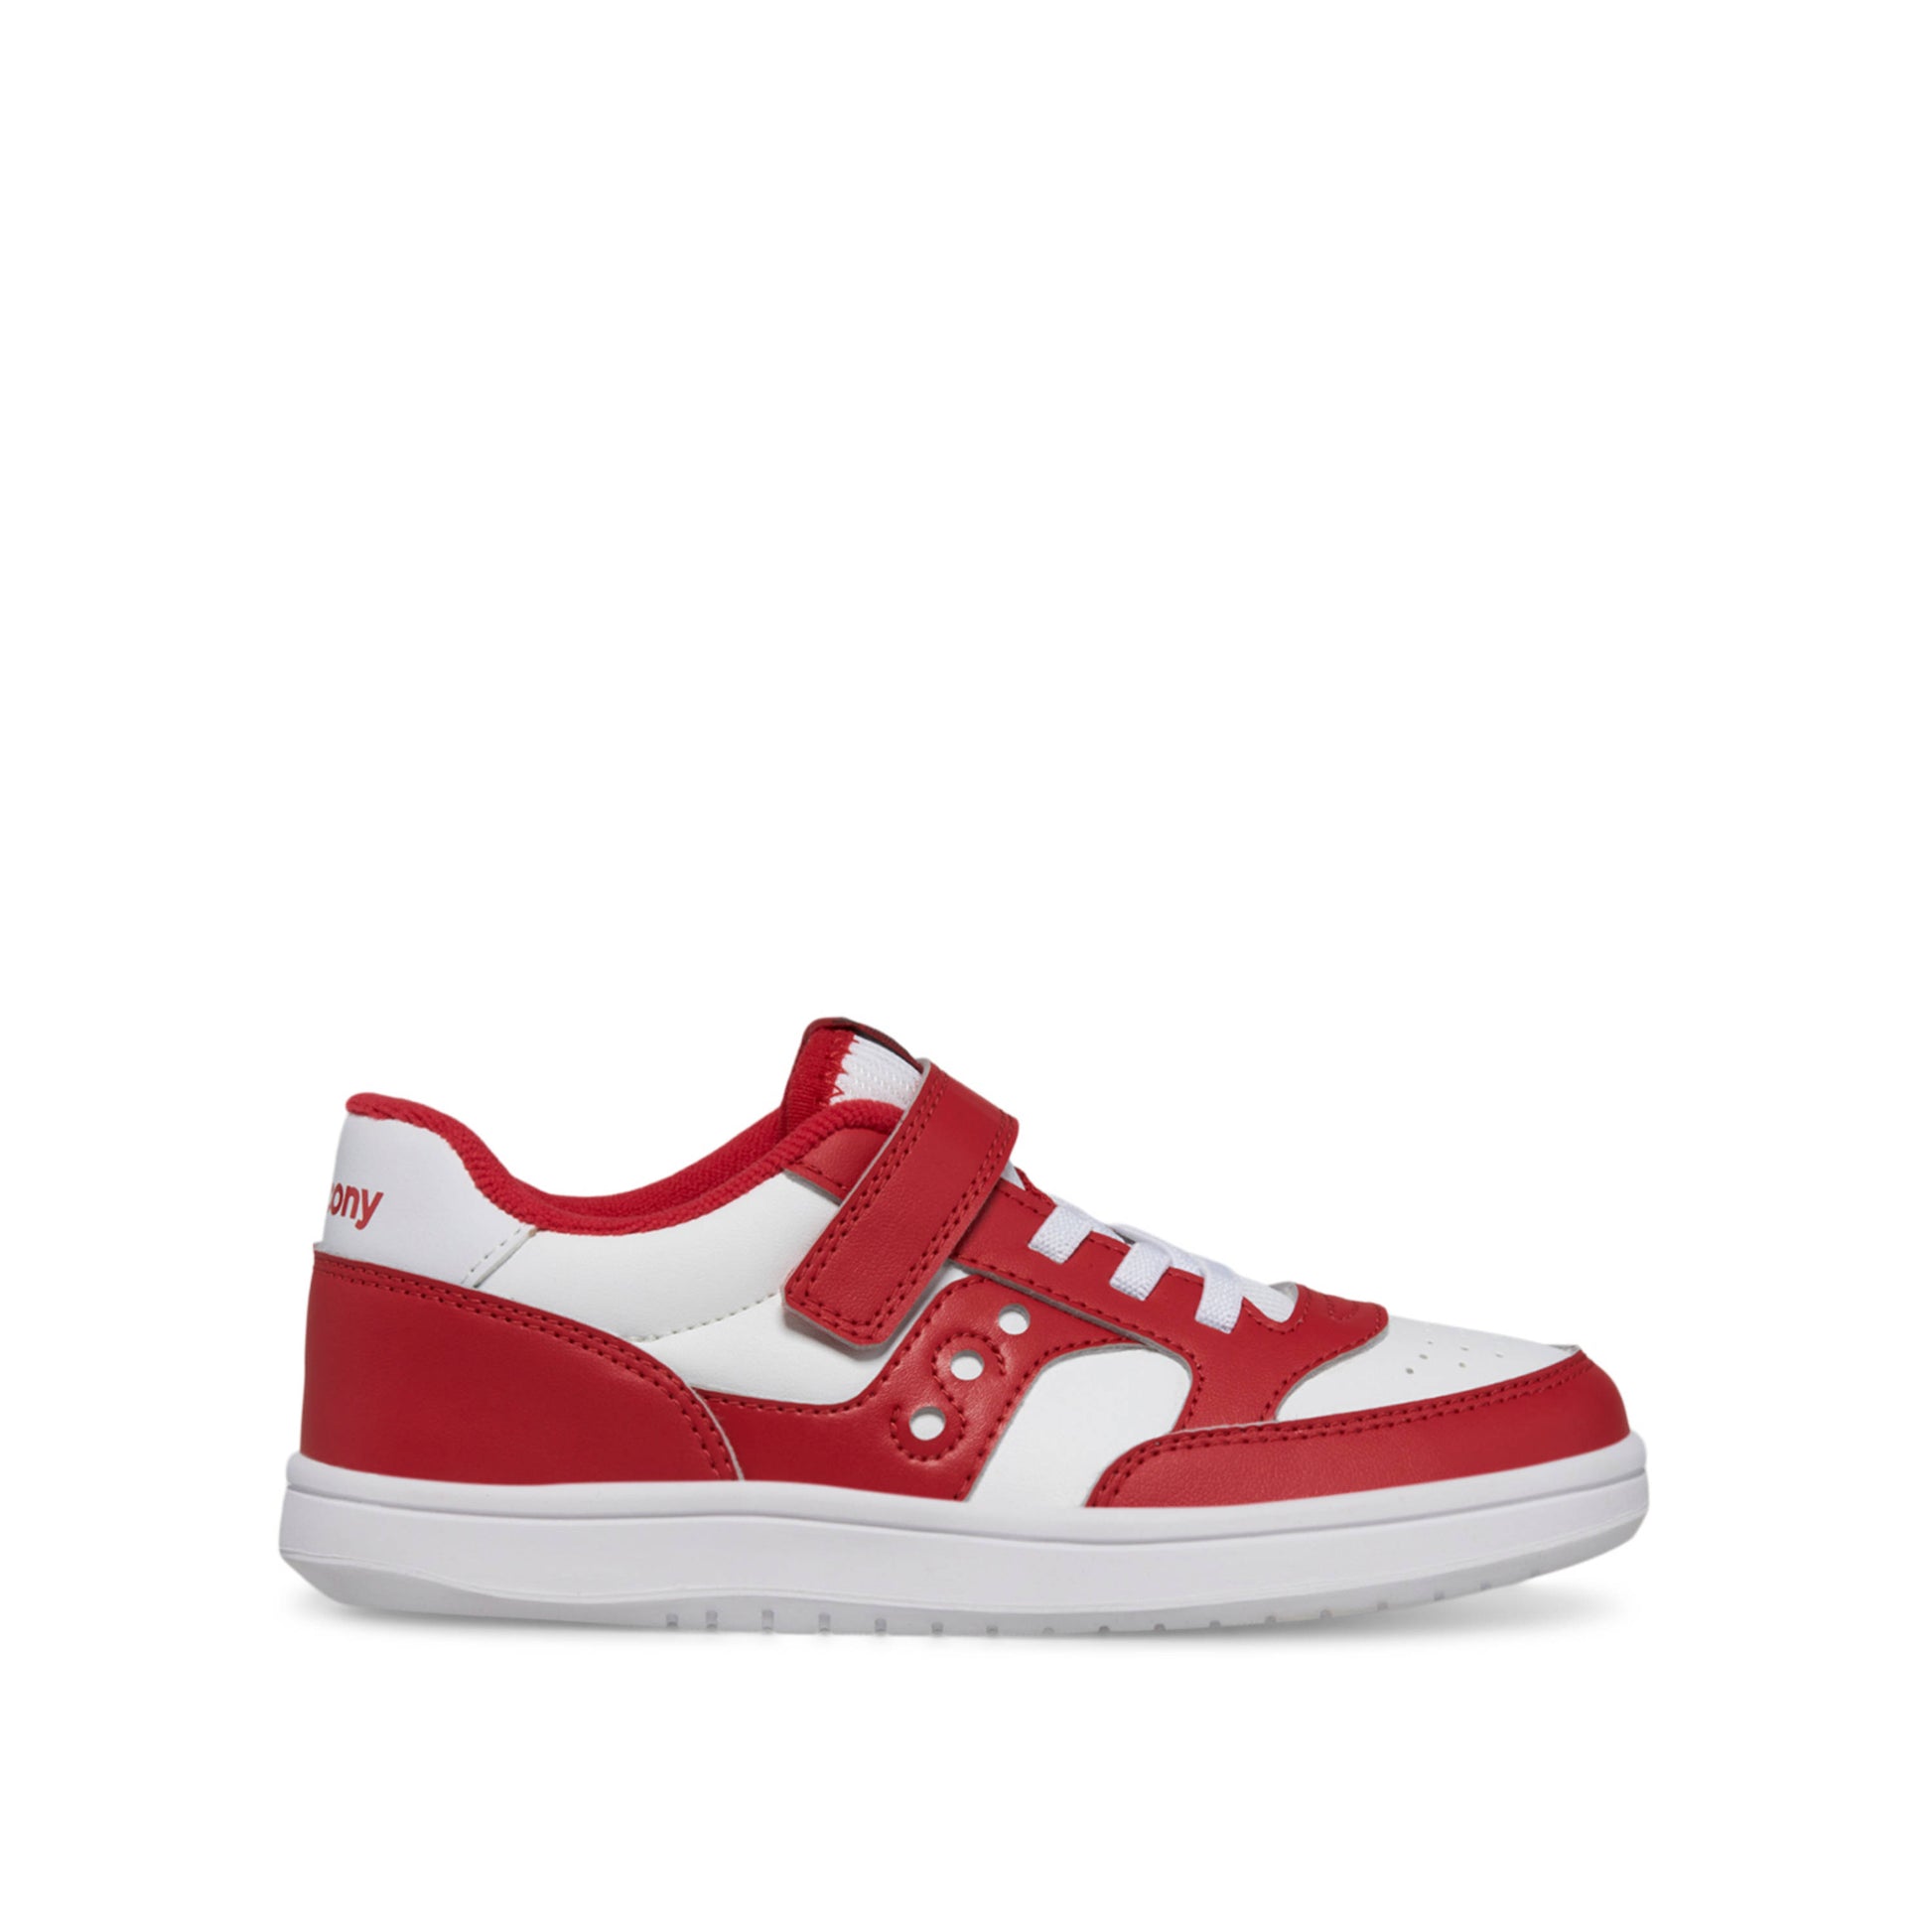 Saucony sneaker voor kinderen met elastische veter. Witte sneaker met rode accenten. 